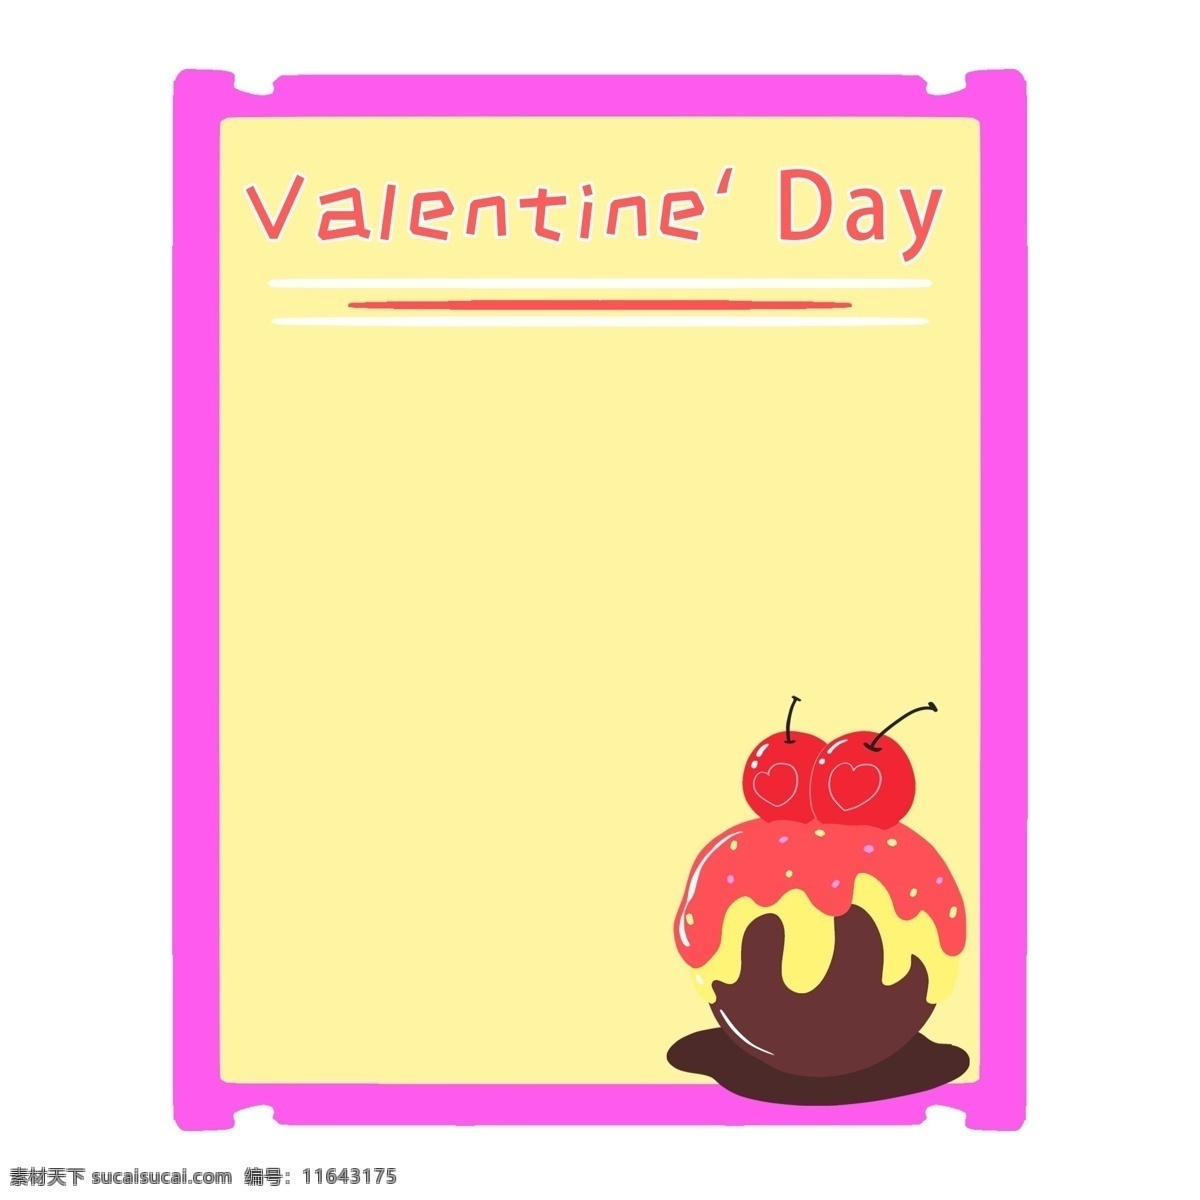 卡通 情人节 贺卡 插画 卡通贺卡 玫 粉色 边框 黄色文字框 巧克力贺卡 爱心 巧克力 蛋糕 红色果子